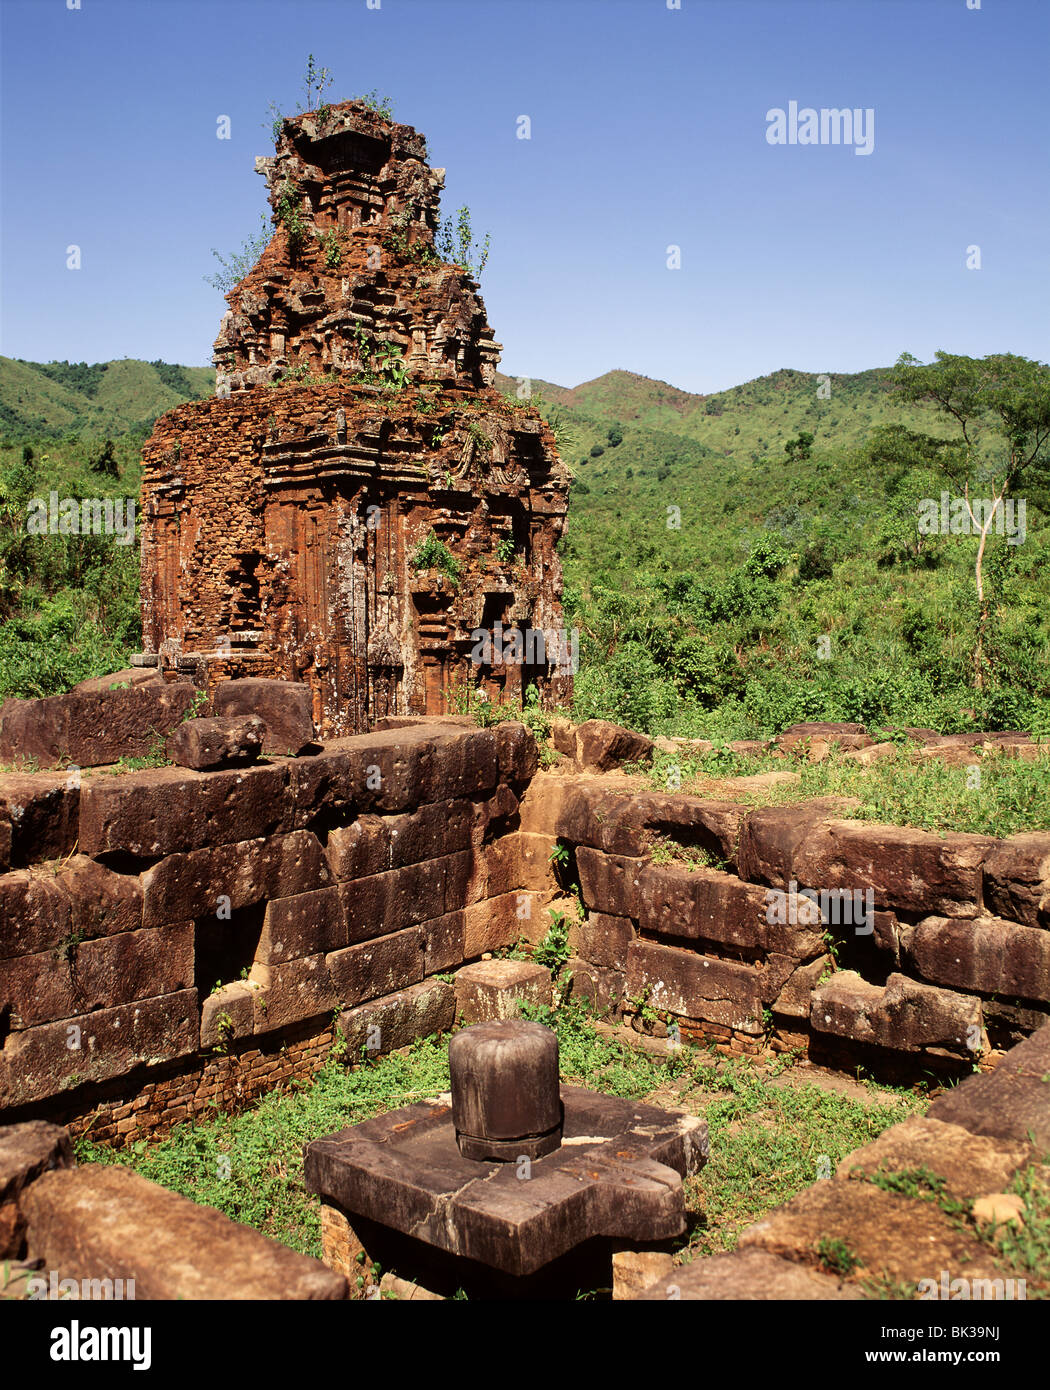 Ruinen des Heiligtums Cham meines Sohnes aus dem 7. bis 10. Jahrhundert, Indochina, Vietnam, Südostasien, Asien Stockfoto